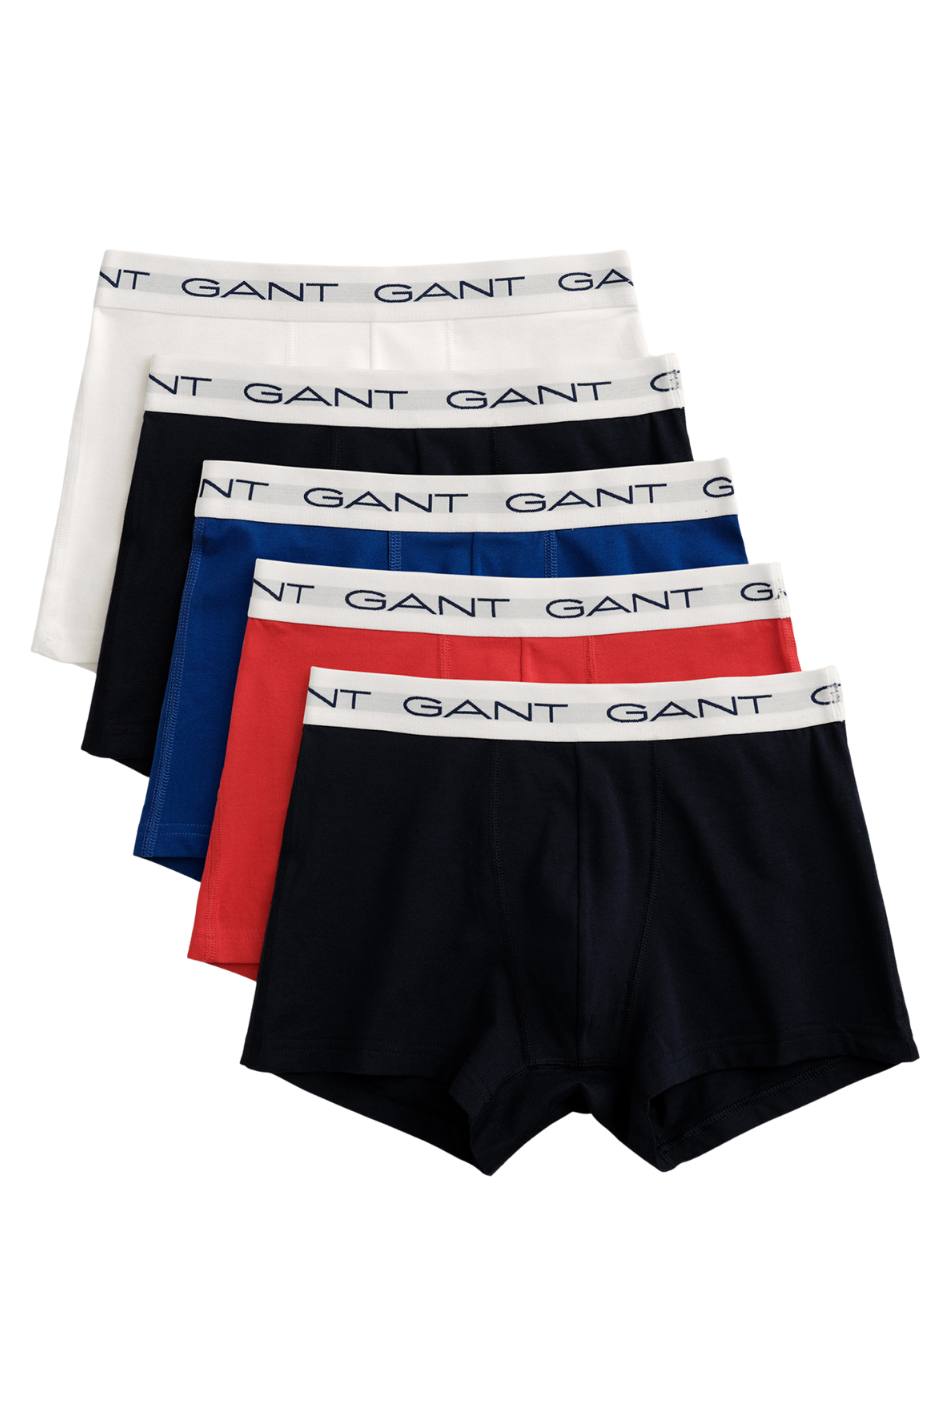 Gant 5 Pack Men's Trunk